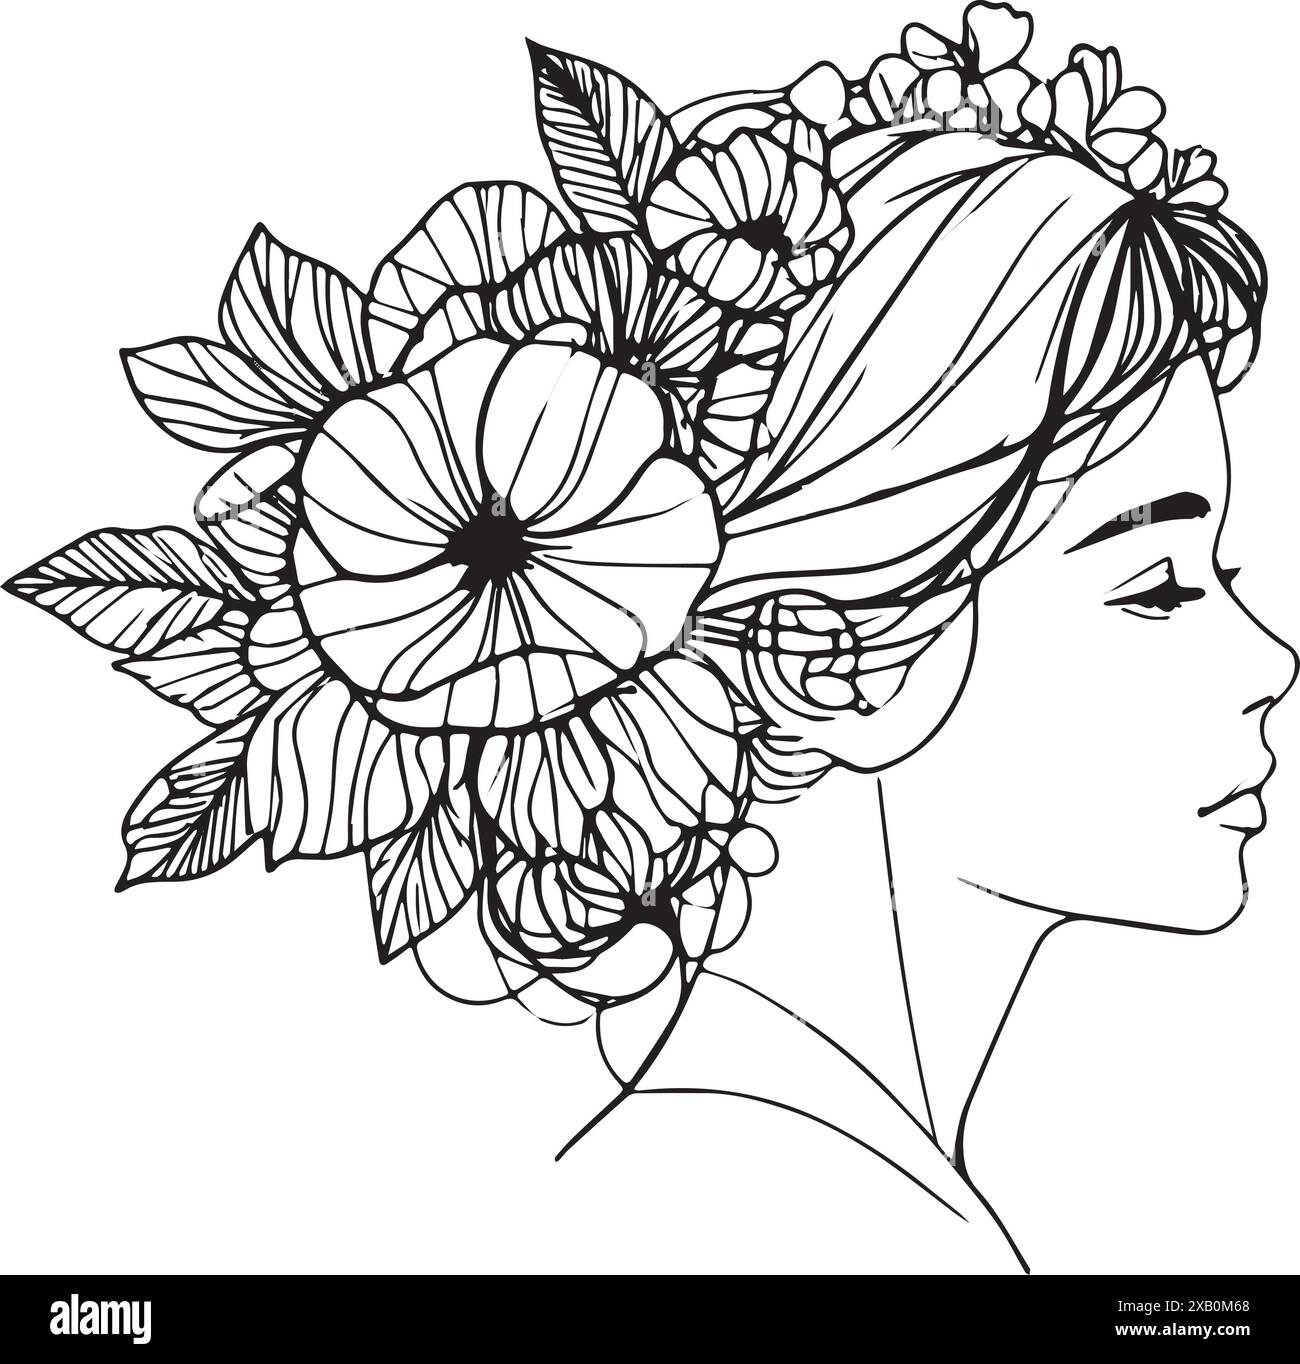 Immagine minimalista in stile boho con morbide linee nere sul bianco: Giovane donna con fiori nei capelli. Illustrazione elegante e contemporanea, ideale per co Illustrazione Vettoriale